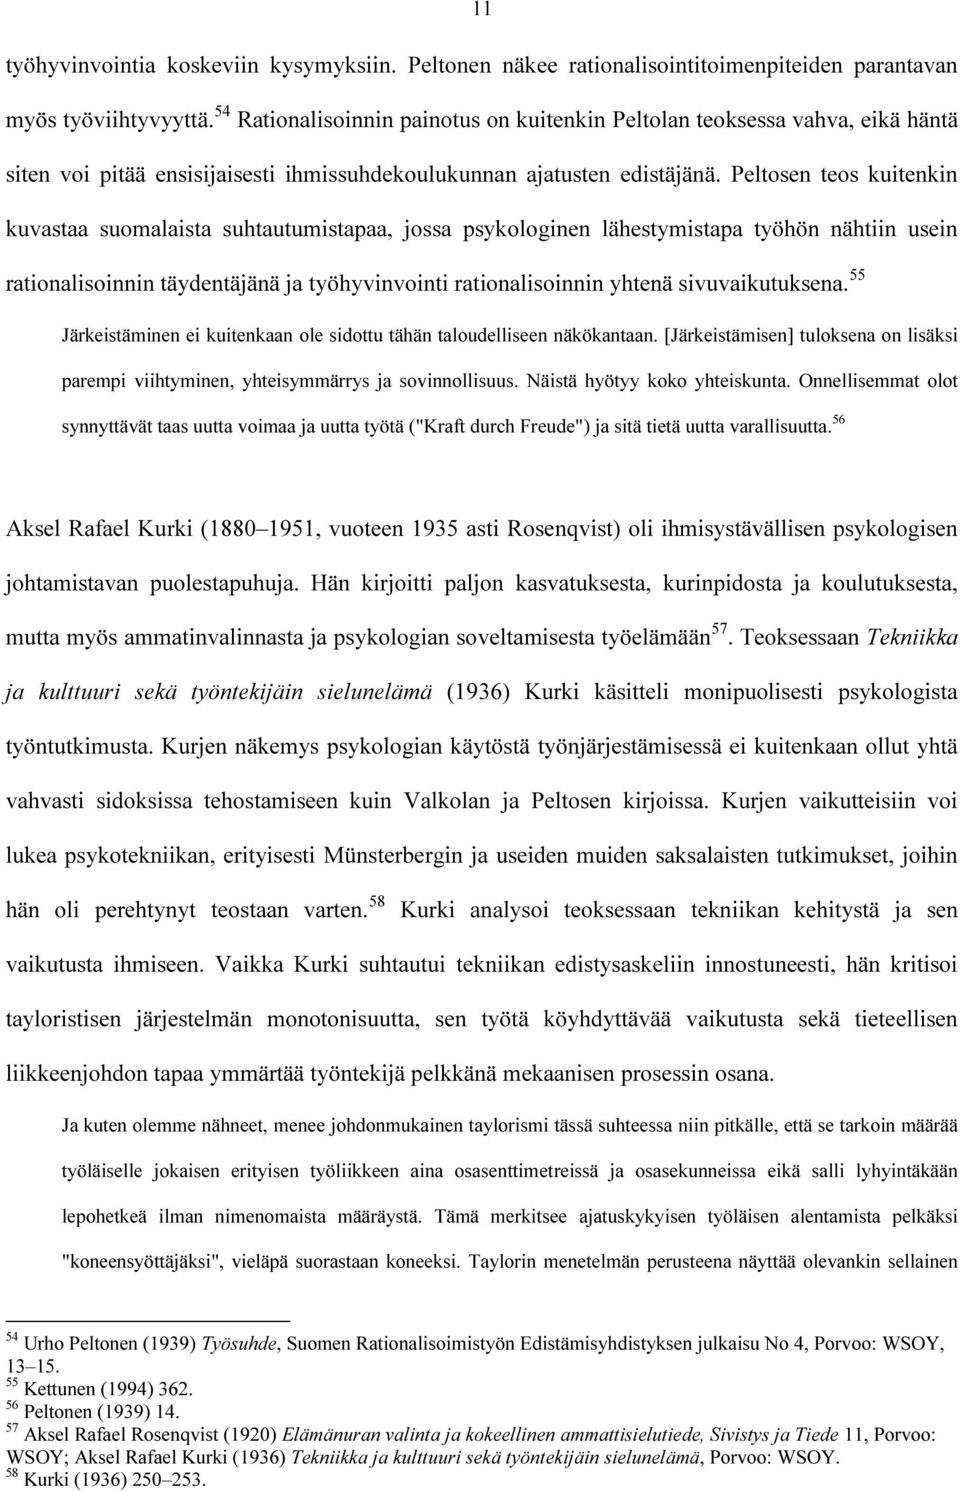 Peltosen teos kuitenkin kuvastaa suomalaista suhtautumistapaa, jossa psykologinen lähestymistapa työhön nähtiin usein rationalisoinnin täydentäjänä ja työhyvinvointi rationalisoinnin yhtenä